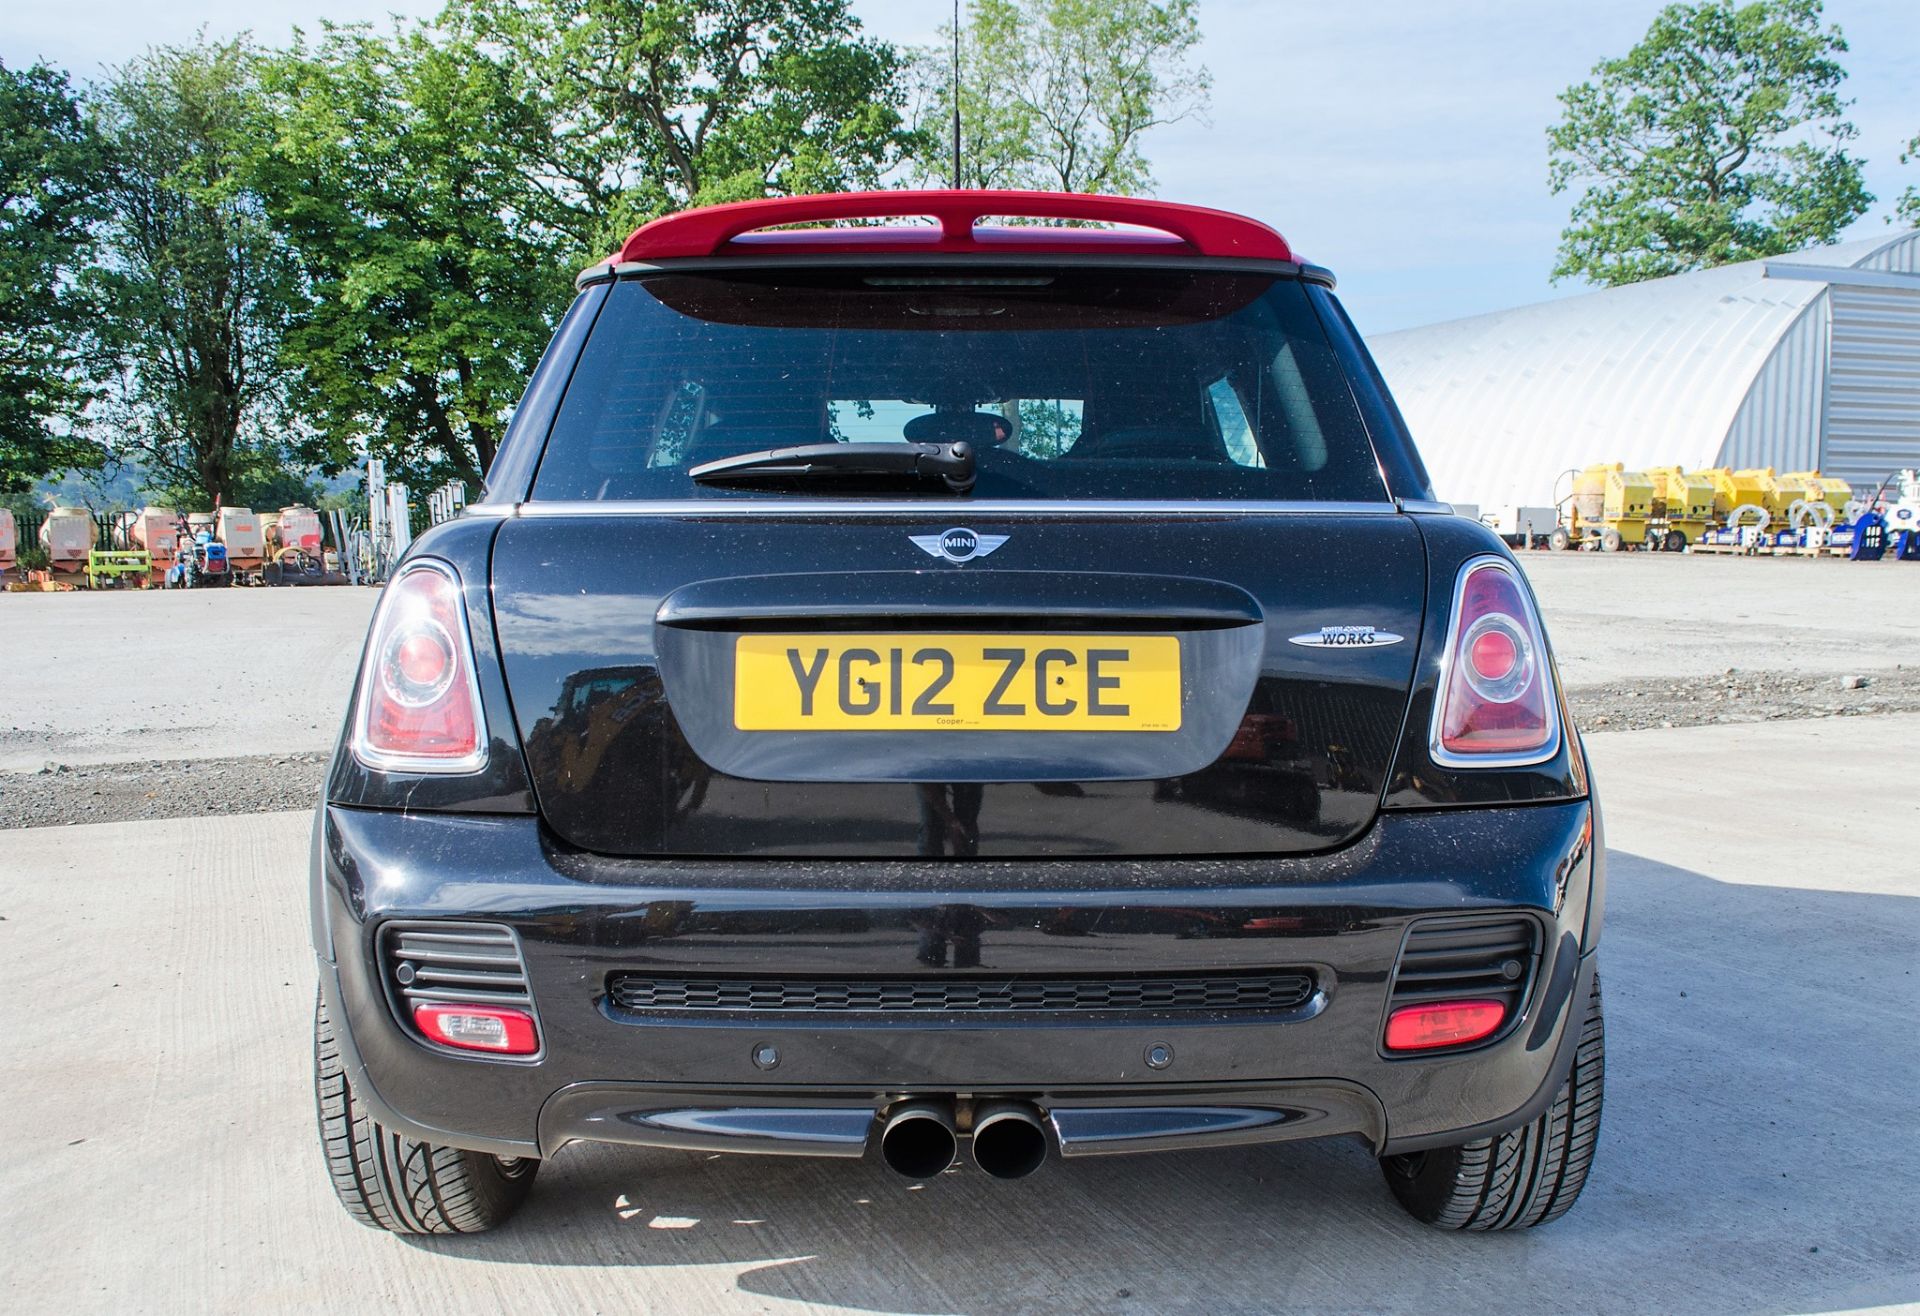 Mini John Cooper Works 1.6 petrol 3 door hatchback car Registration Number: YG12 ZCE Date of - Image 6 of 29